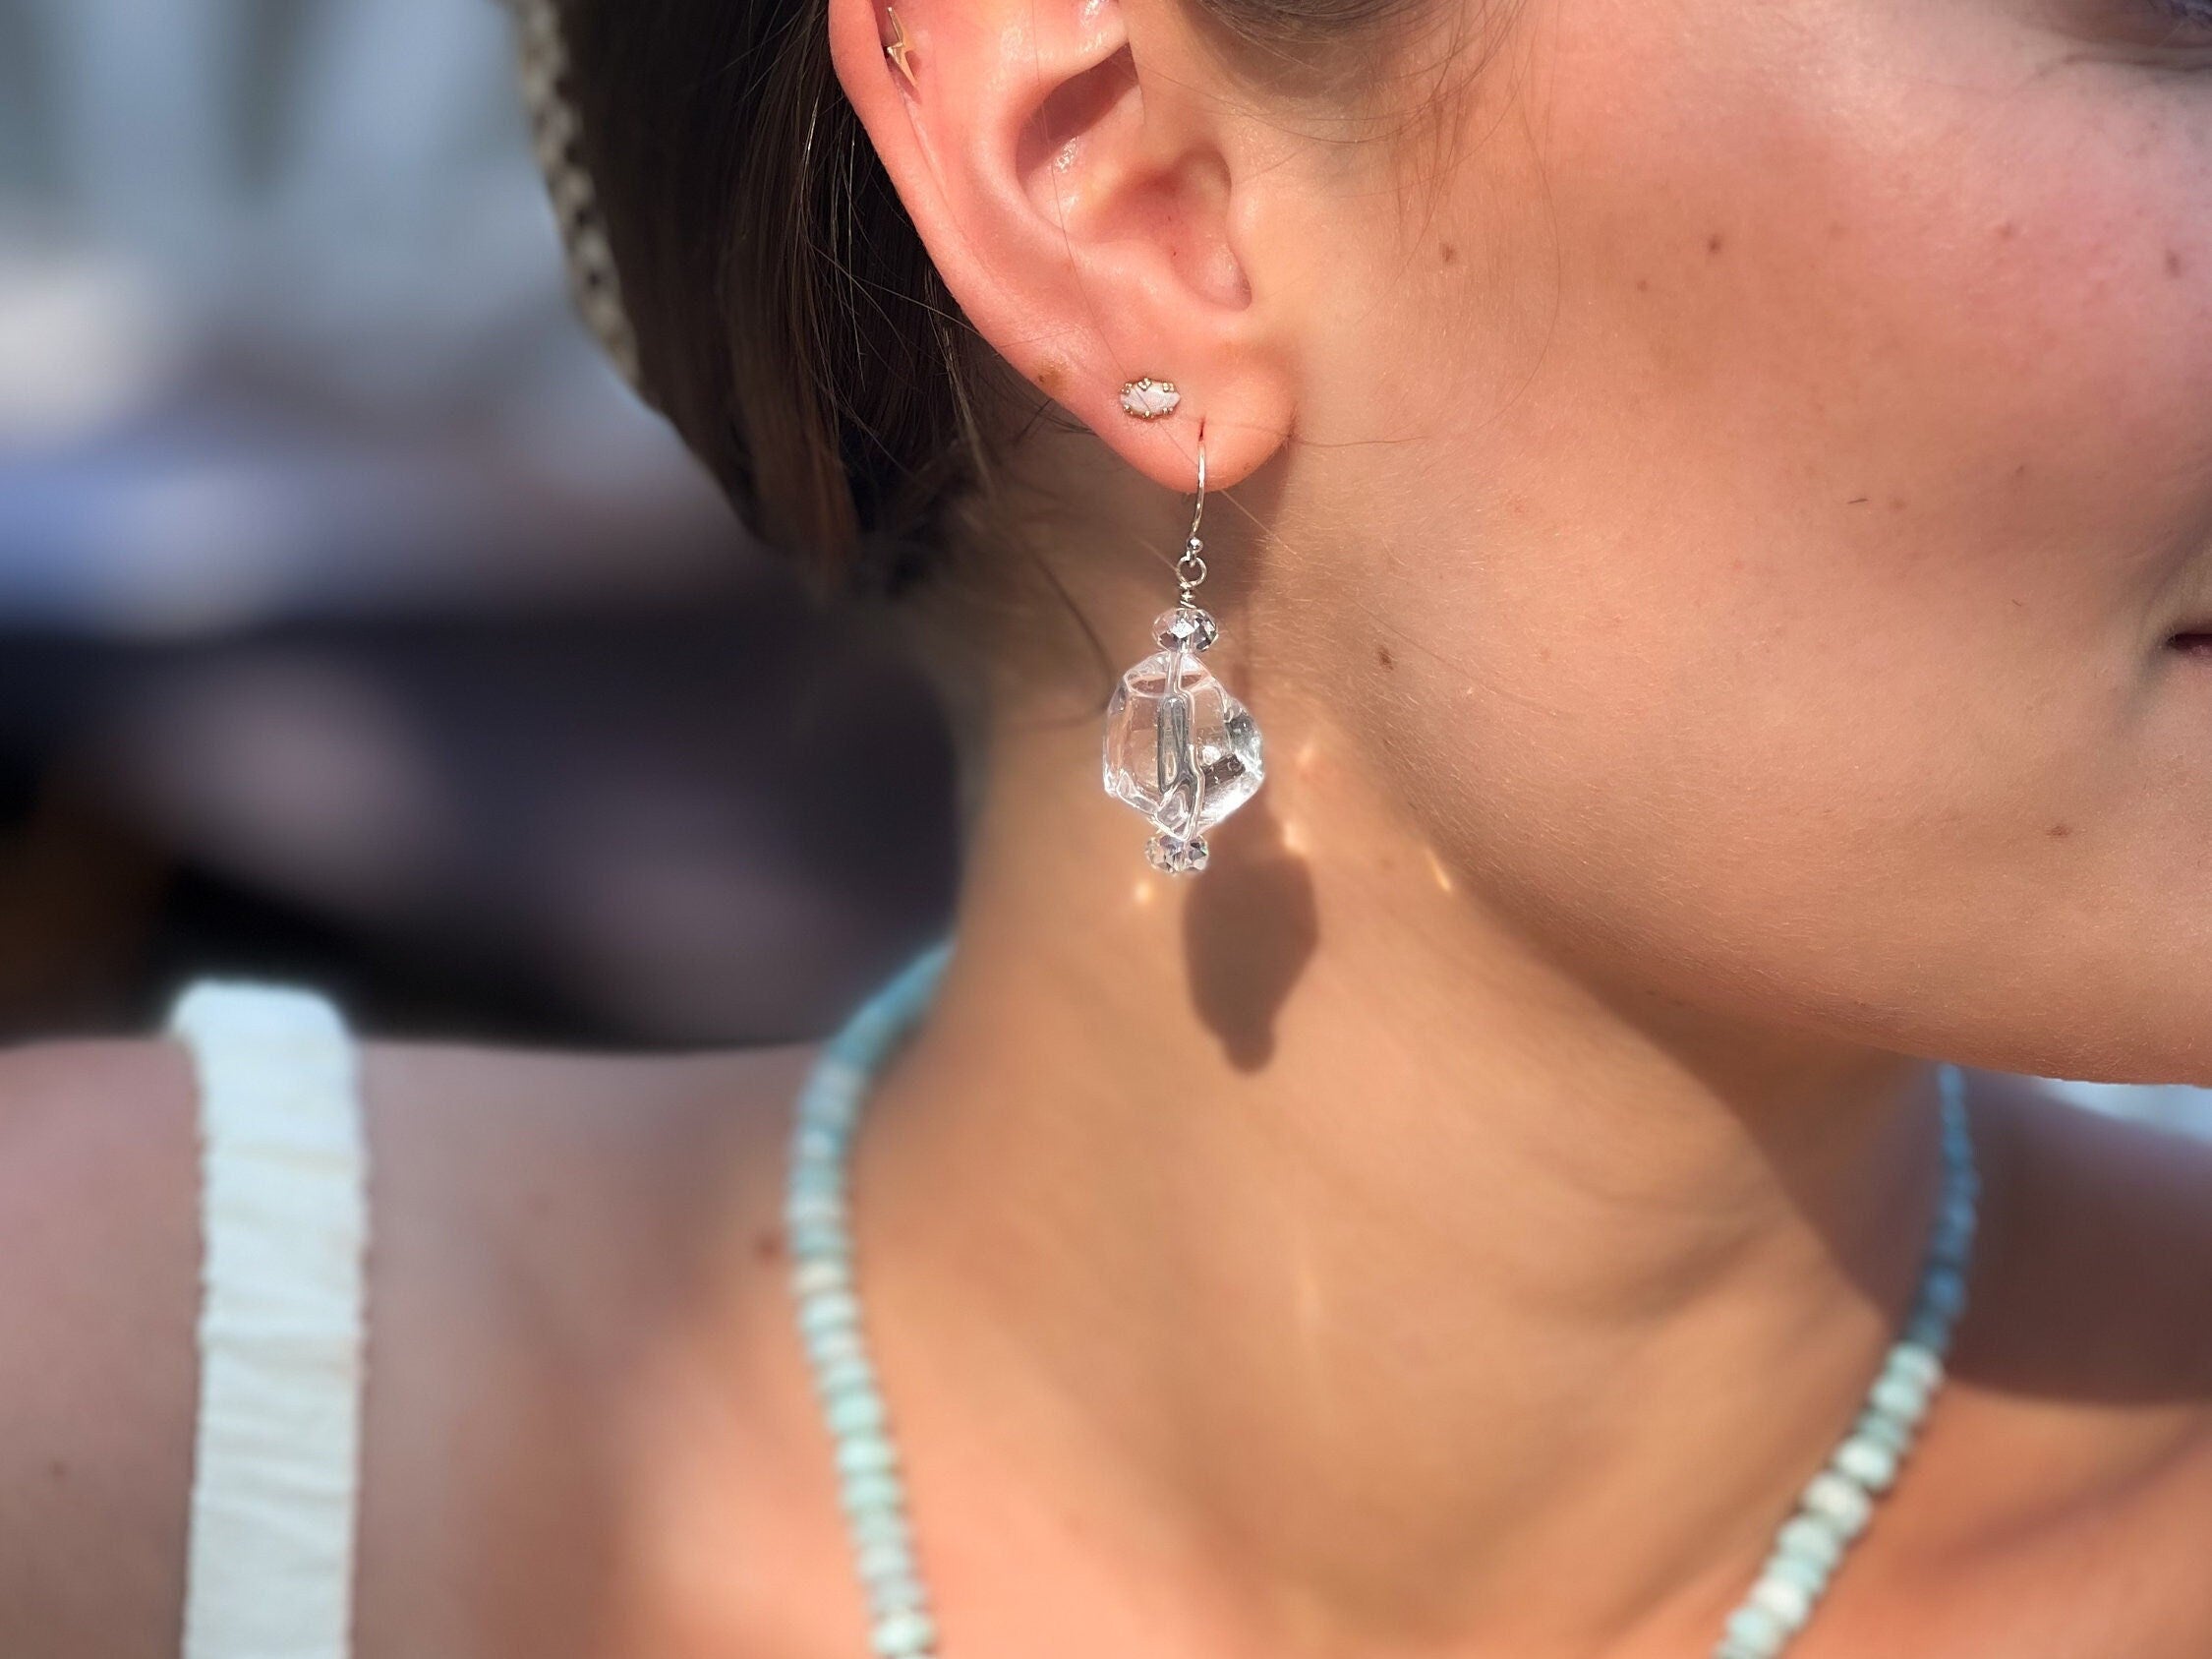 Natural_Gemstones,Quartz,Quartz_Earrings,Drop_Earrings,Clear_Quartz_Earring,Sterling_Silver,Everyday_Earrings,Clear_stone_earring,Quartz_nugget,Gift_for_Her,Summer_earrings,Handmade_earrings,Go_To_earrings